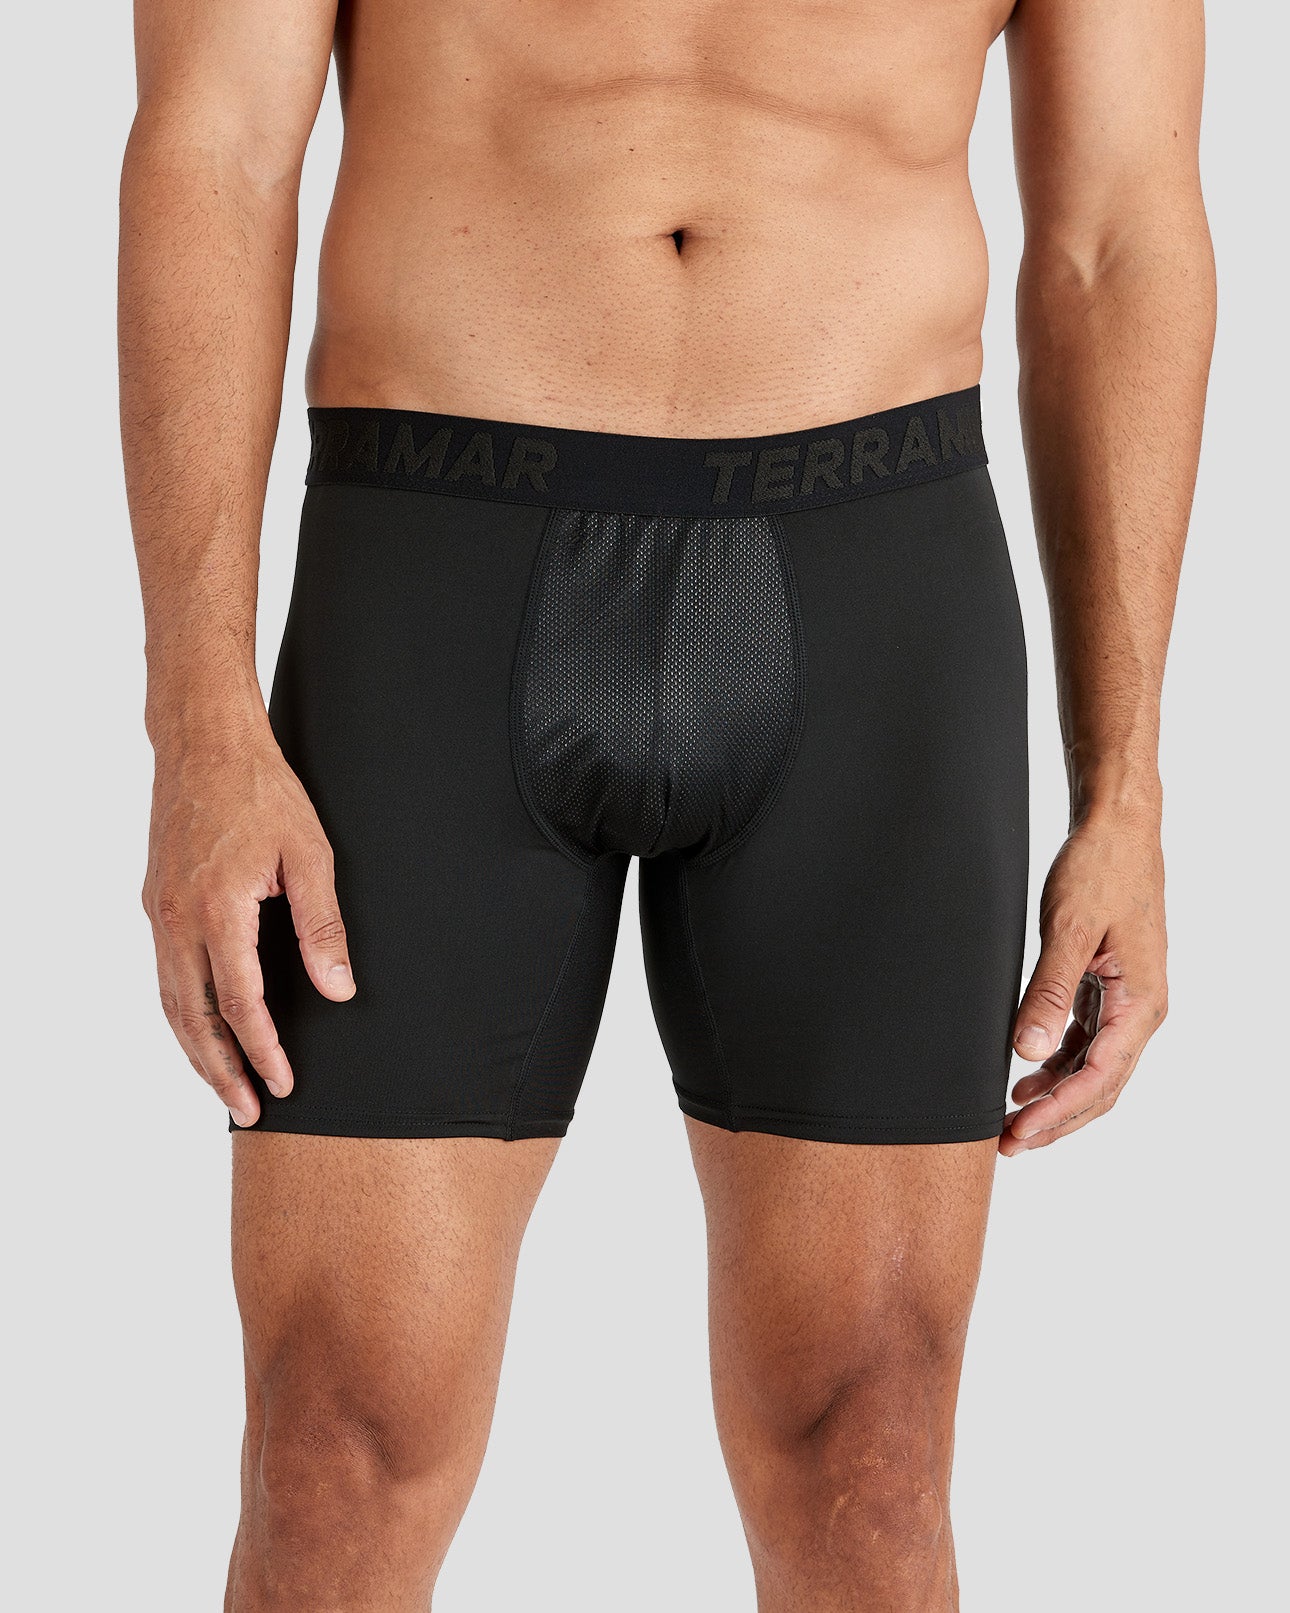  Terramar Men's Standard Performance Underwear Briefs